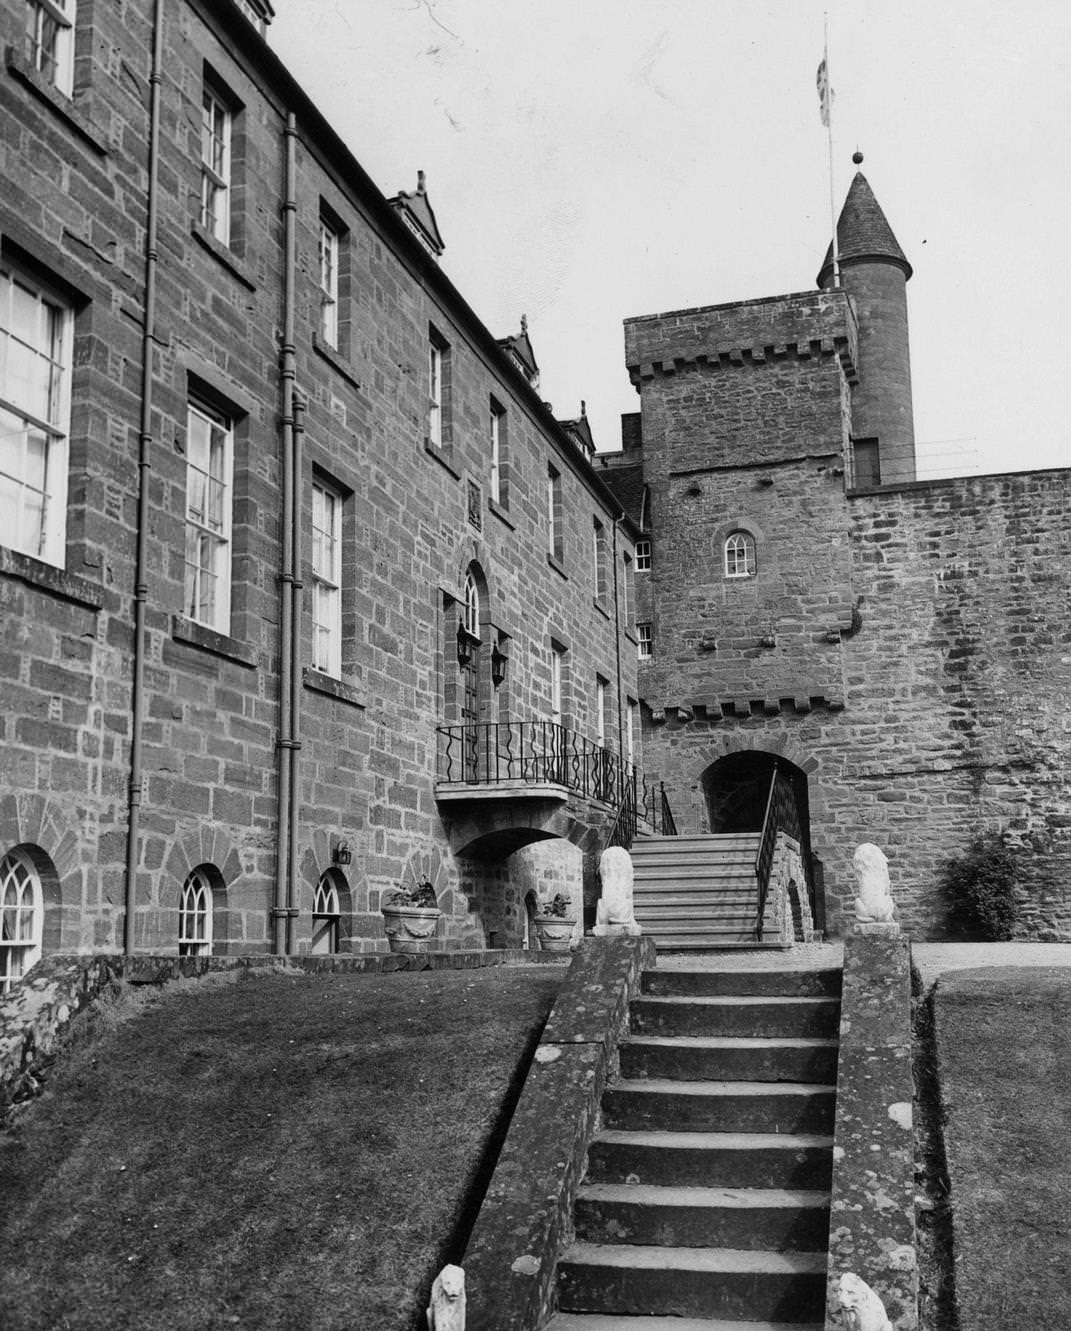 Airlie Castle at Kirriemuir, Angus, in Scotland, 1963